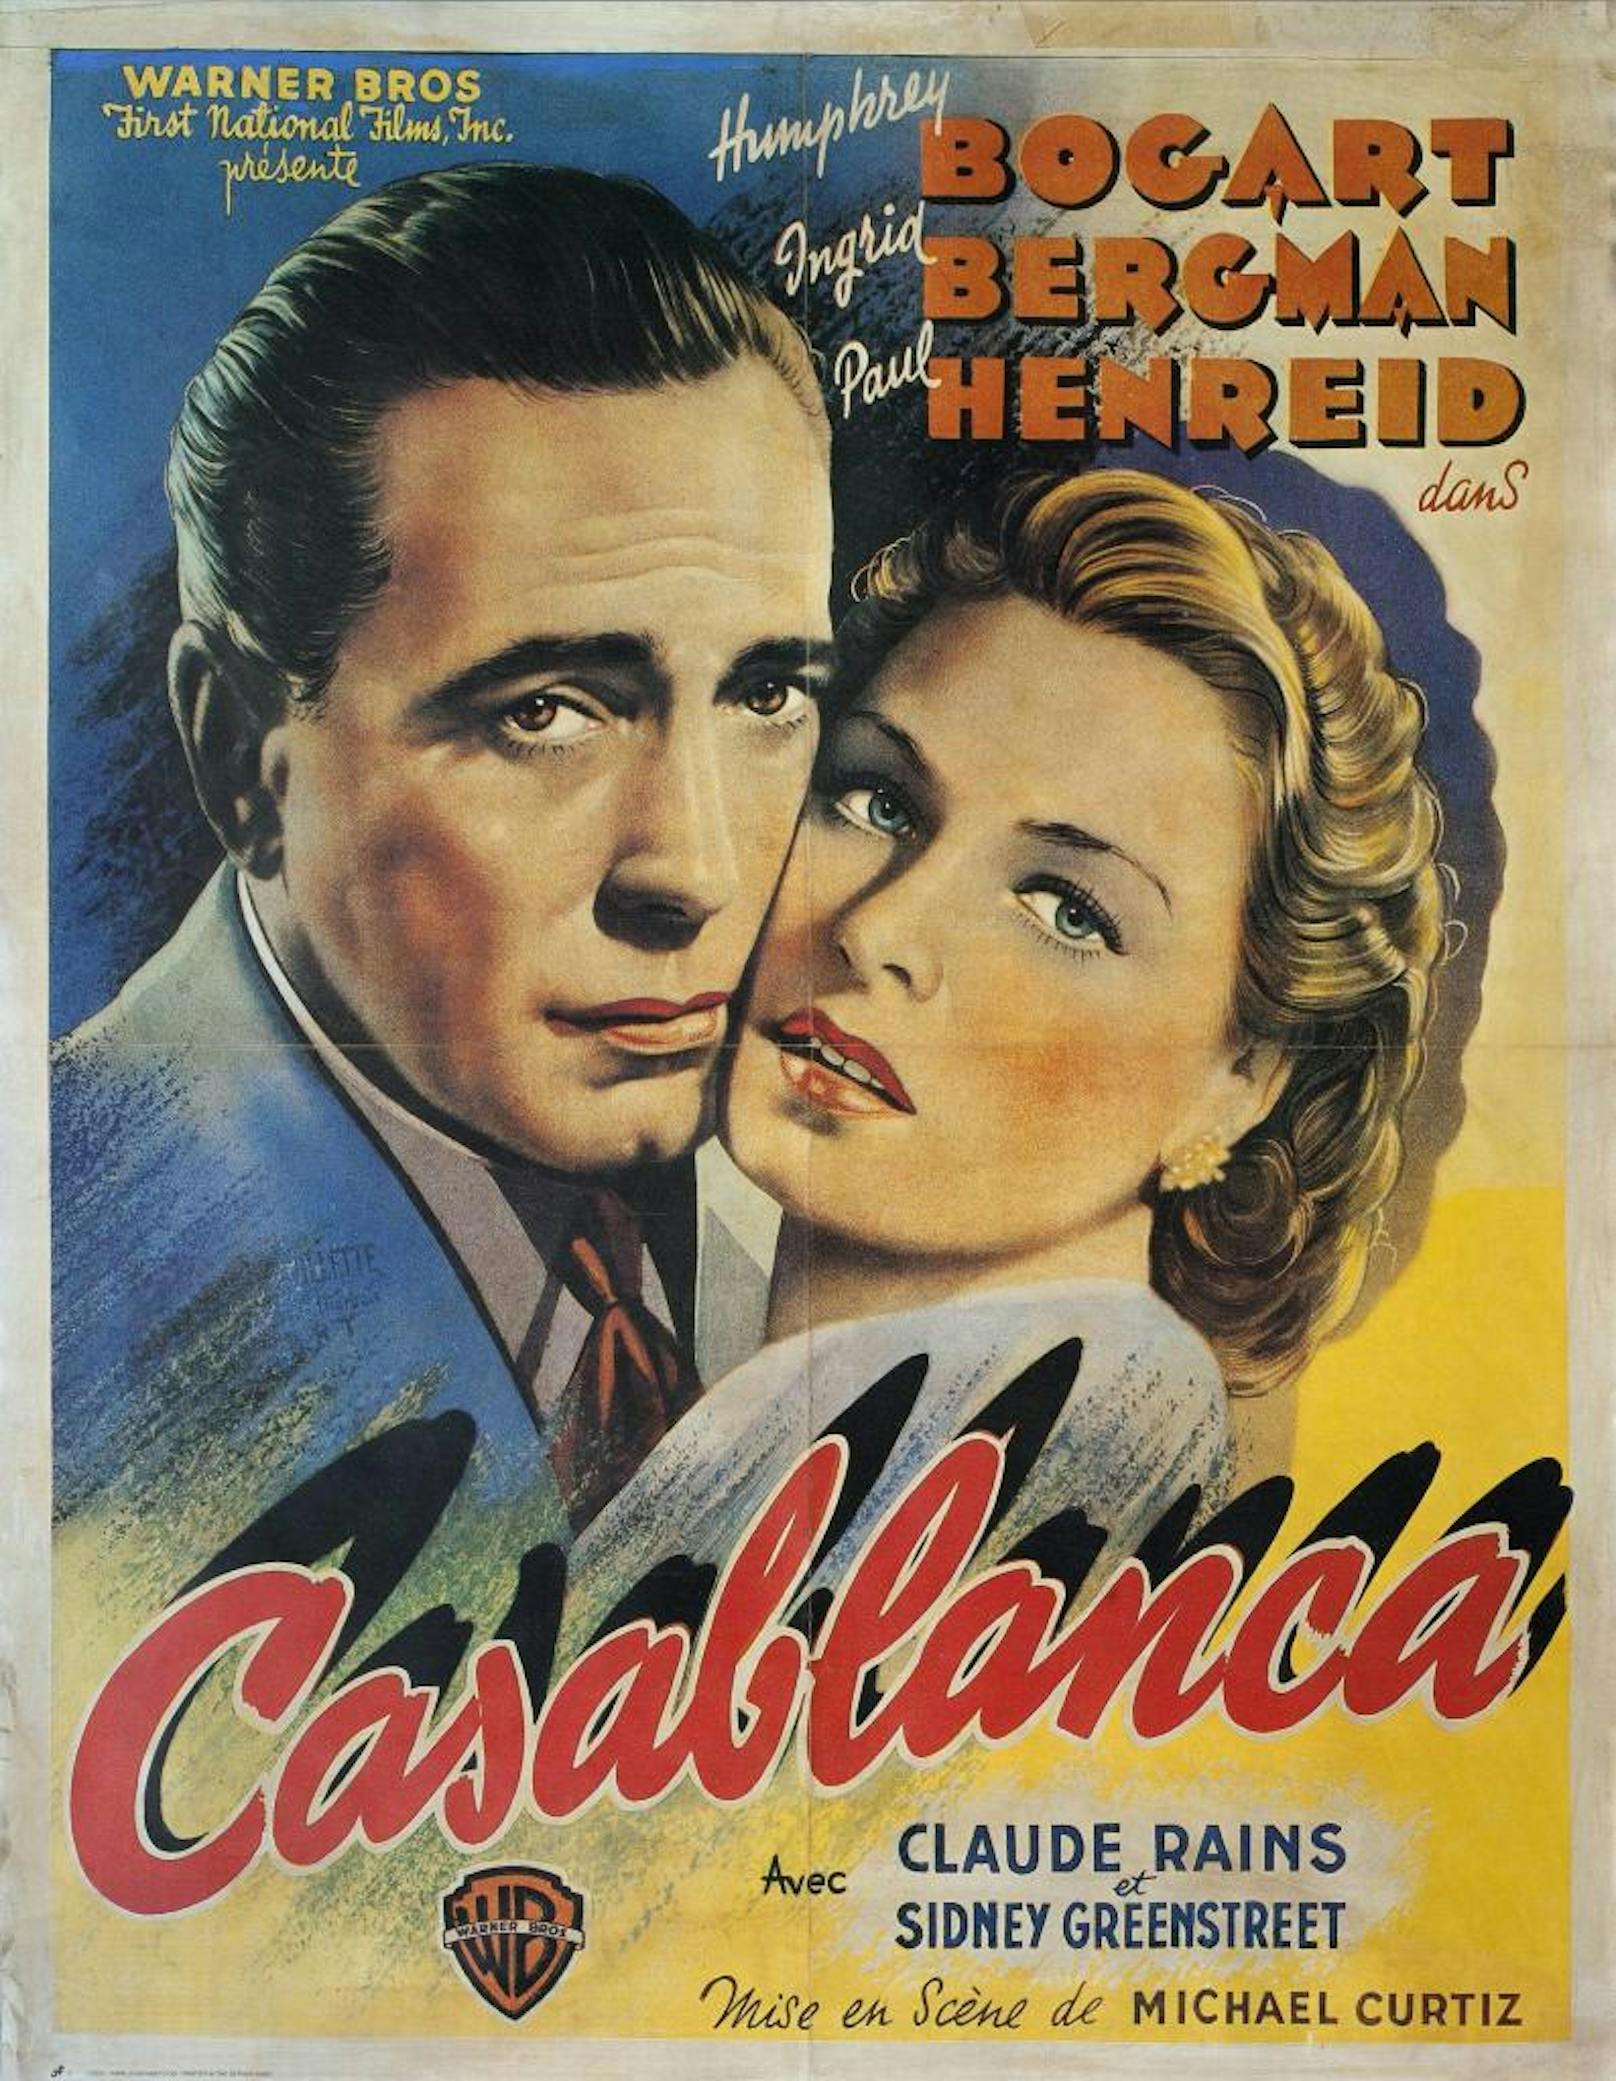 "Casablanca"